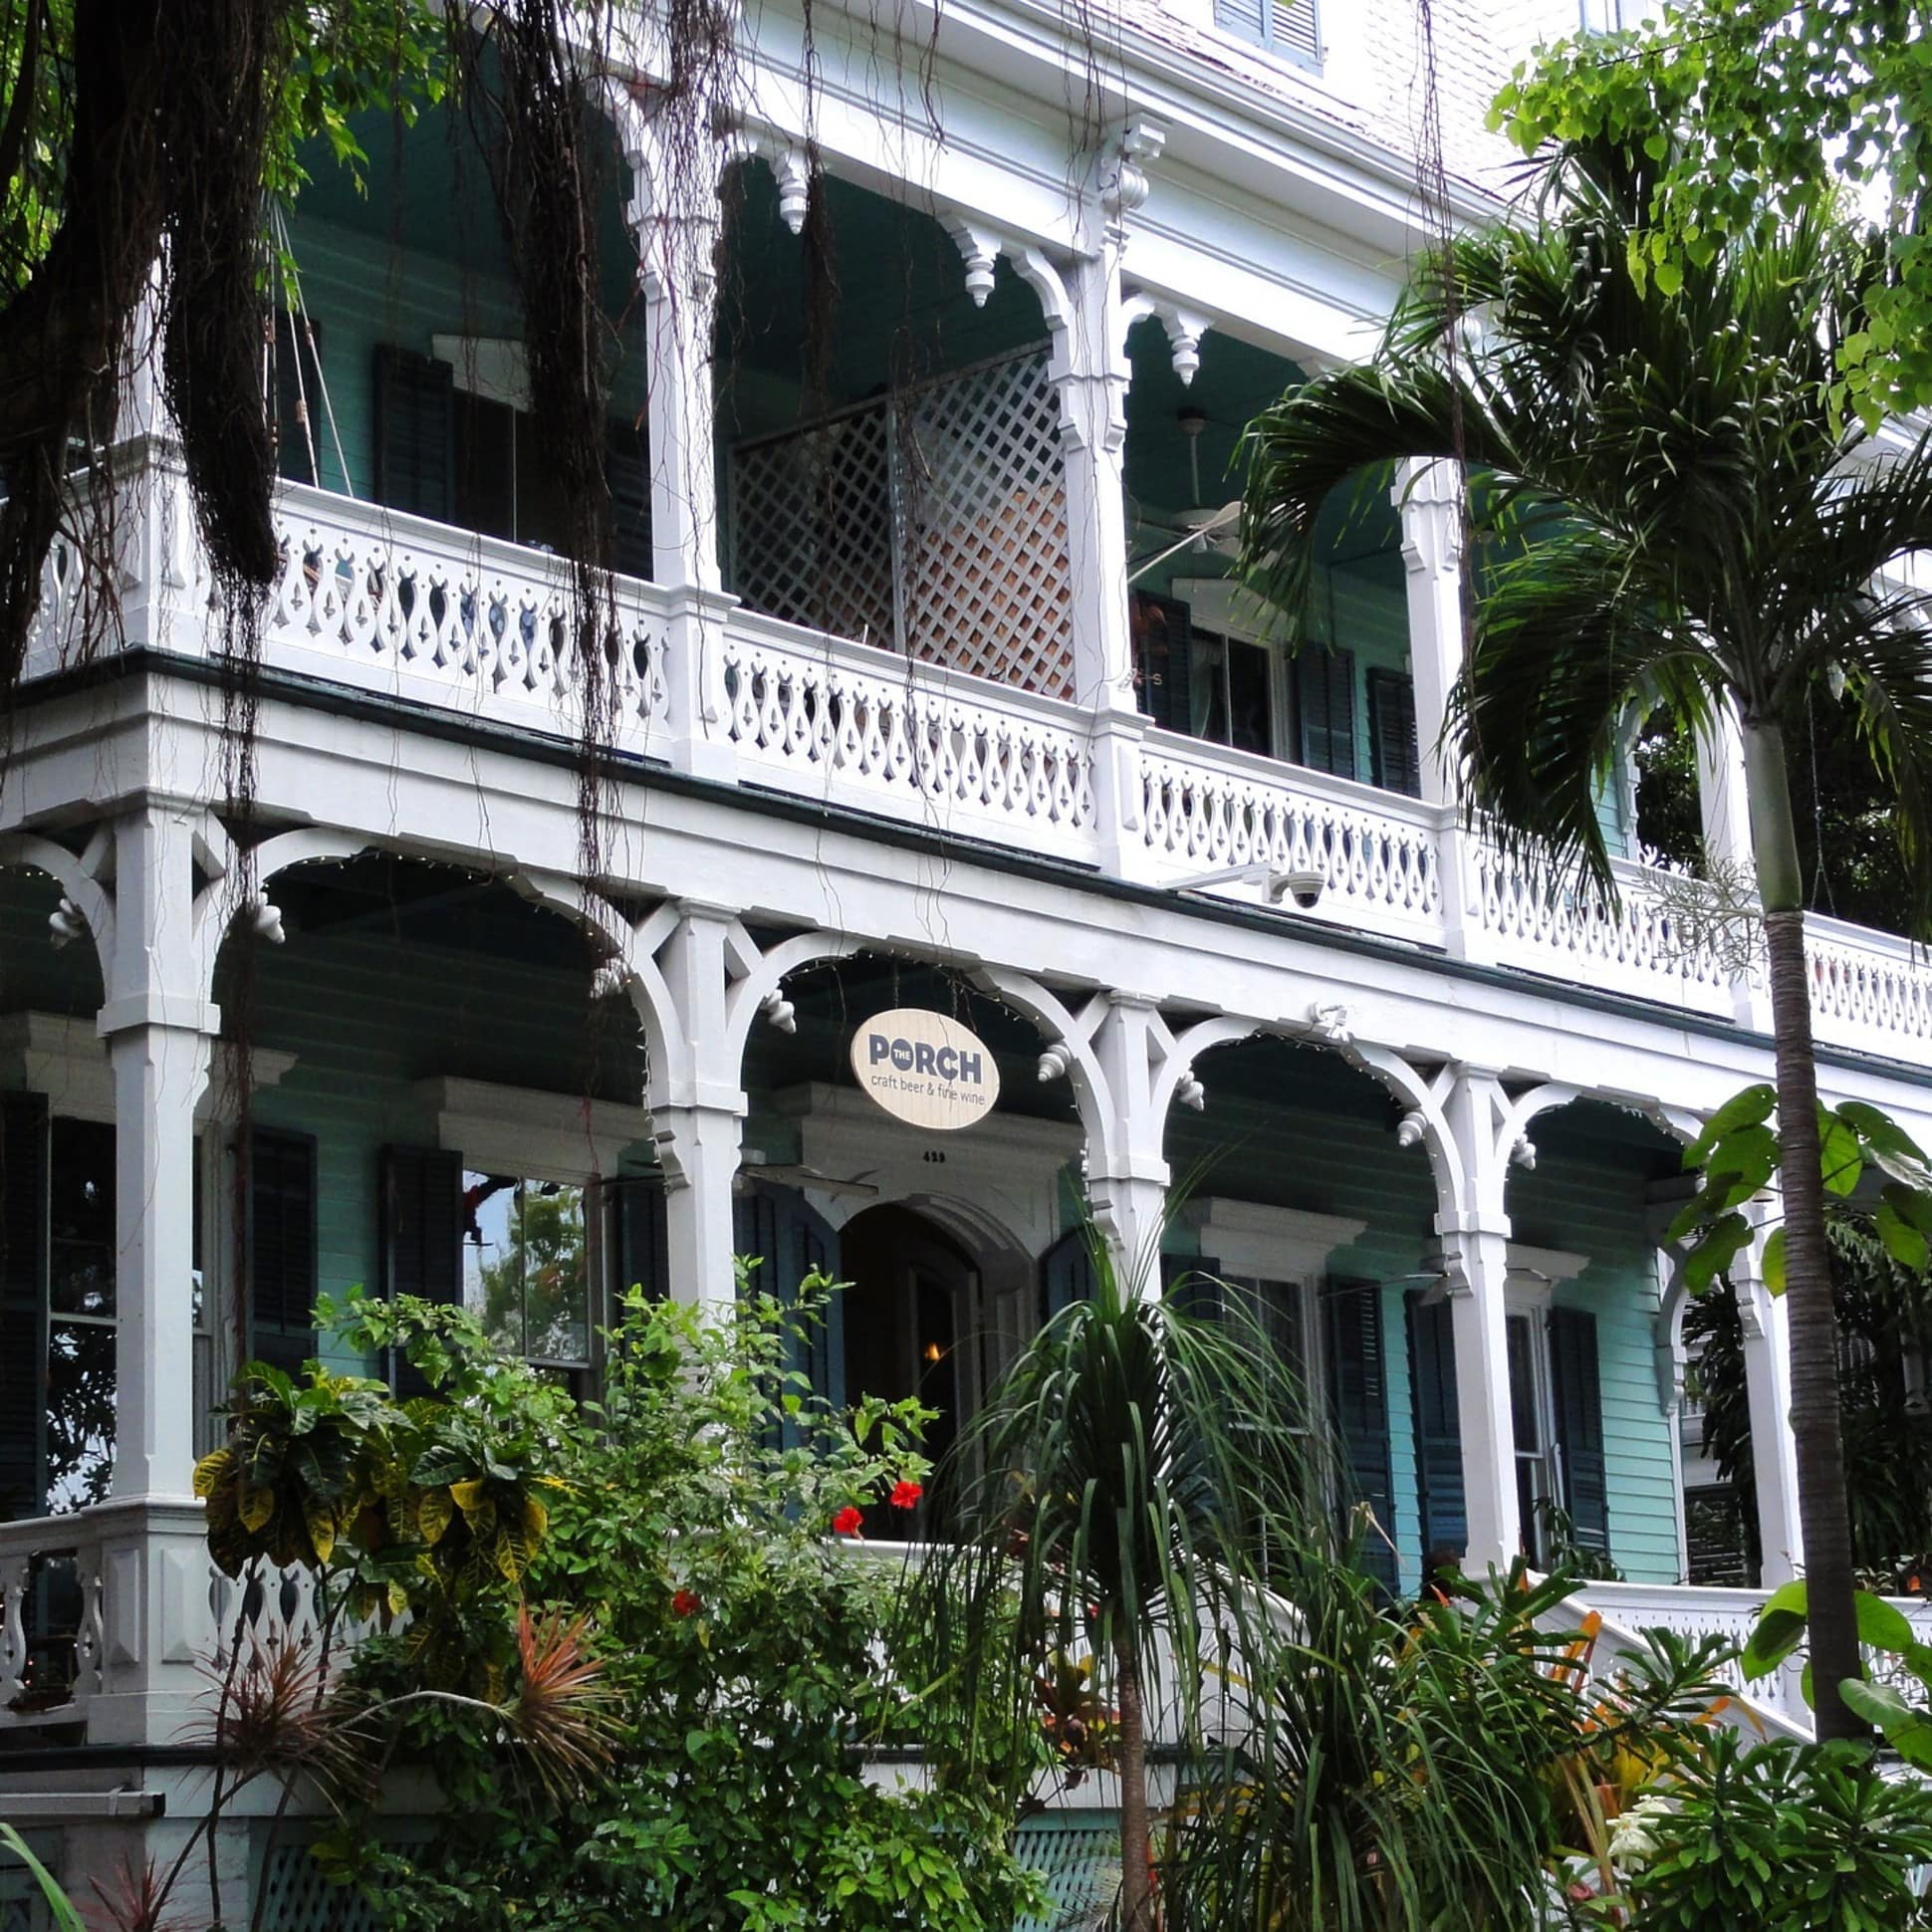 Villa in Florida in Holzbauweise mit Balkon und Palmen